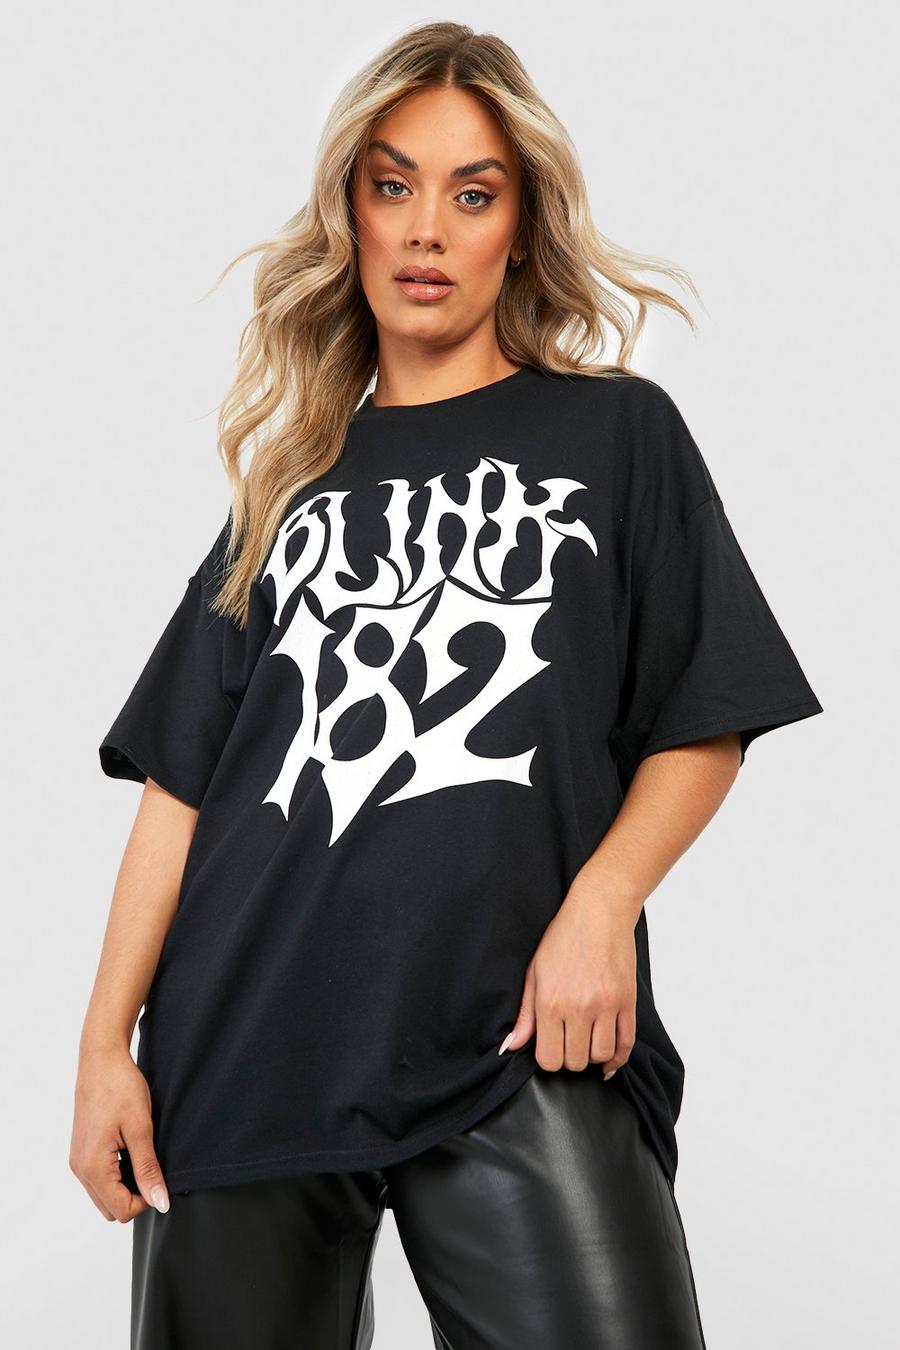 Black nero Plus Oversized Blink 182 License T-shirt